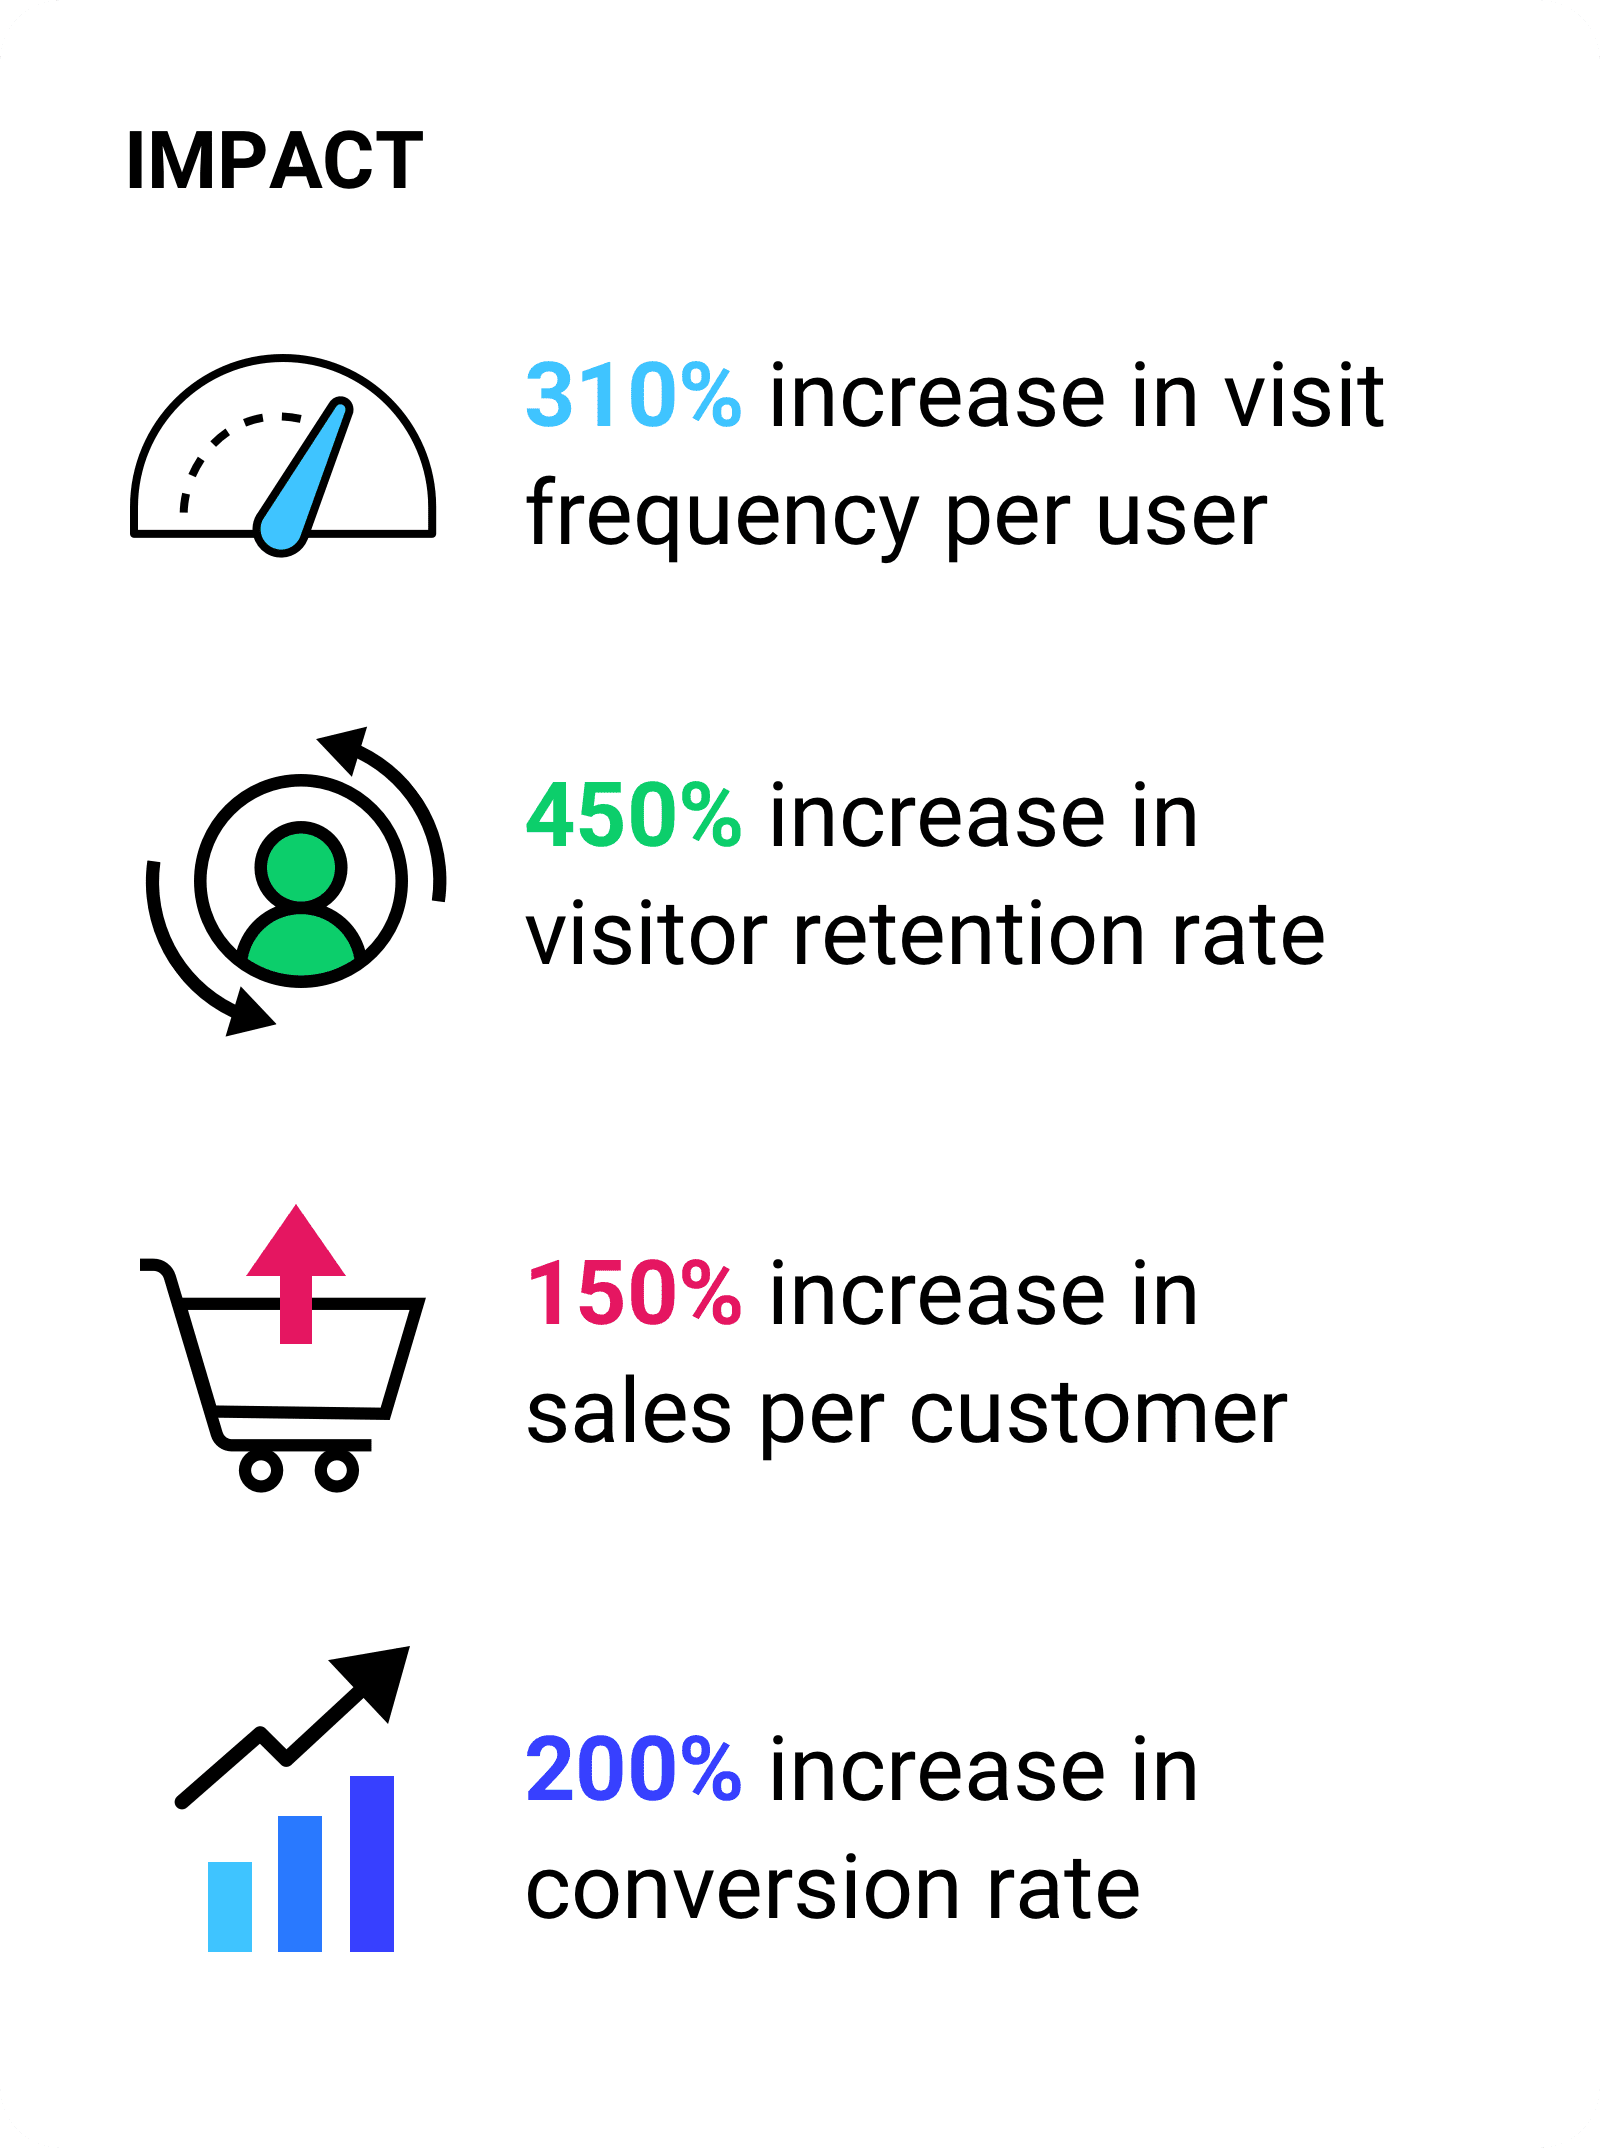 Увеличение частоты посещений на одного пользователя на 310%. Увеличение коэффициента удержания посетителей на 450%. Увеличение продаж на одного клиента на 150%. Увеличение коэффициента конверсии на 200%.